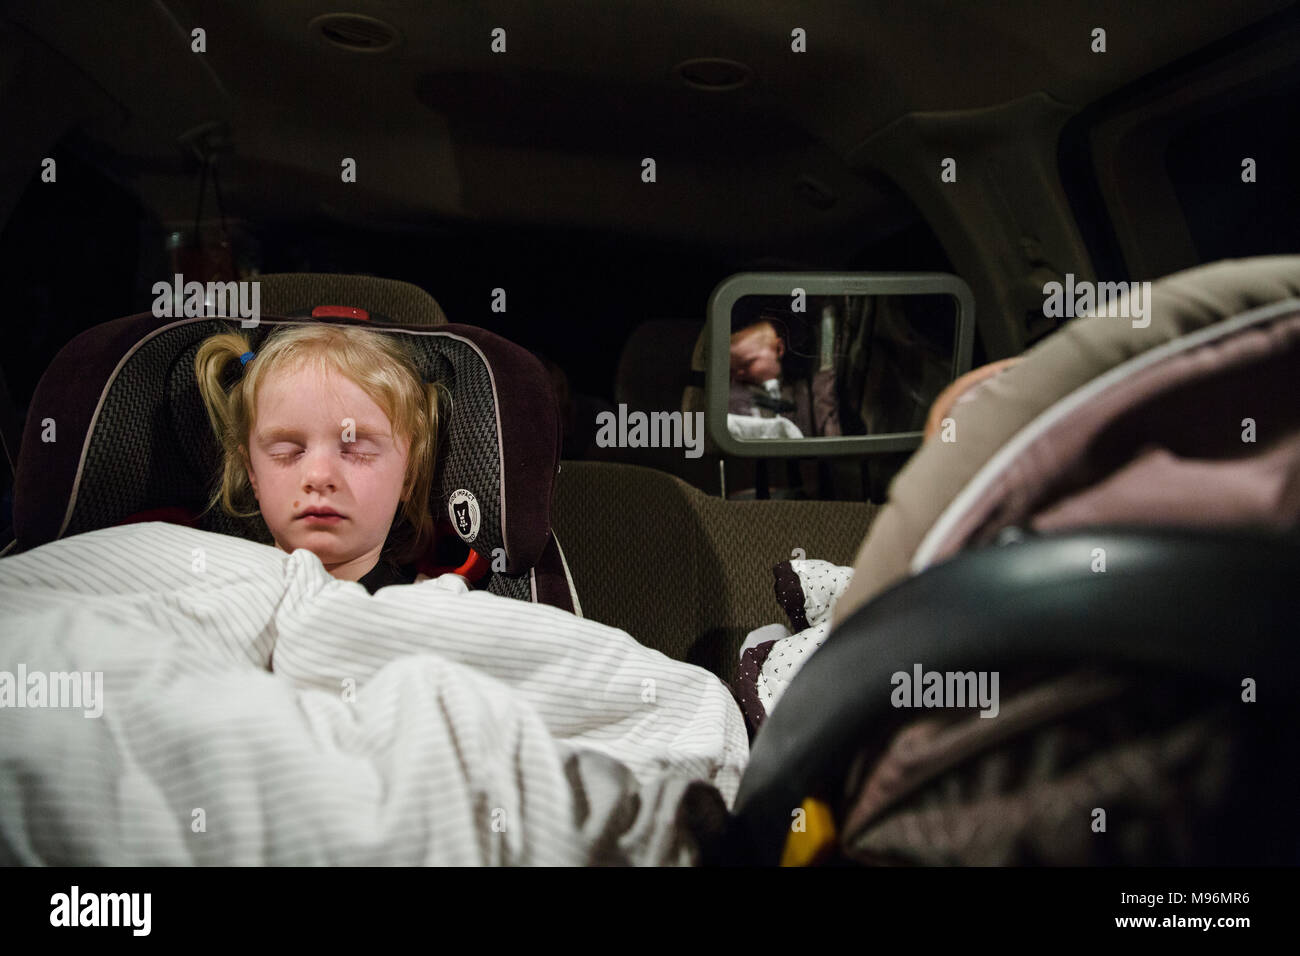 Deux enfants dormant dans des sièges de voiture Banque D'Images